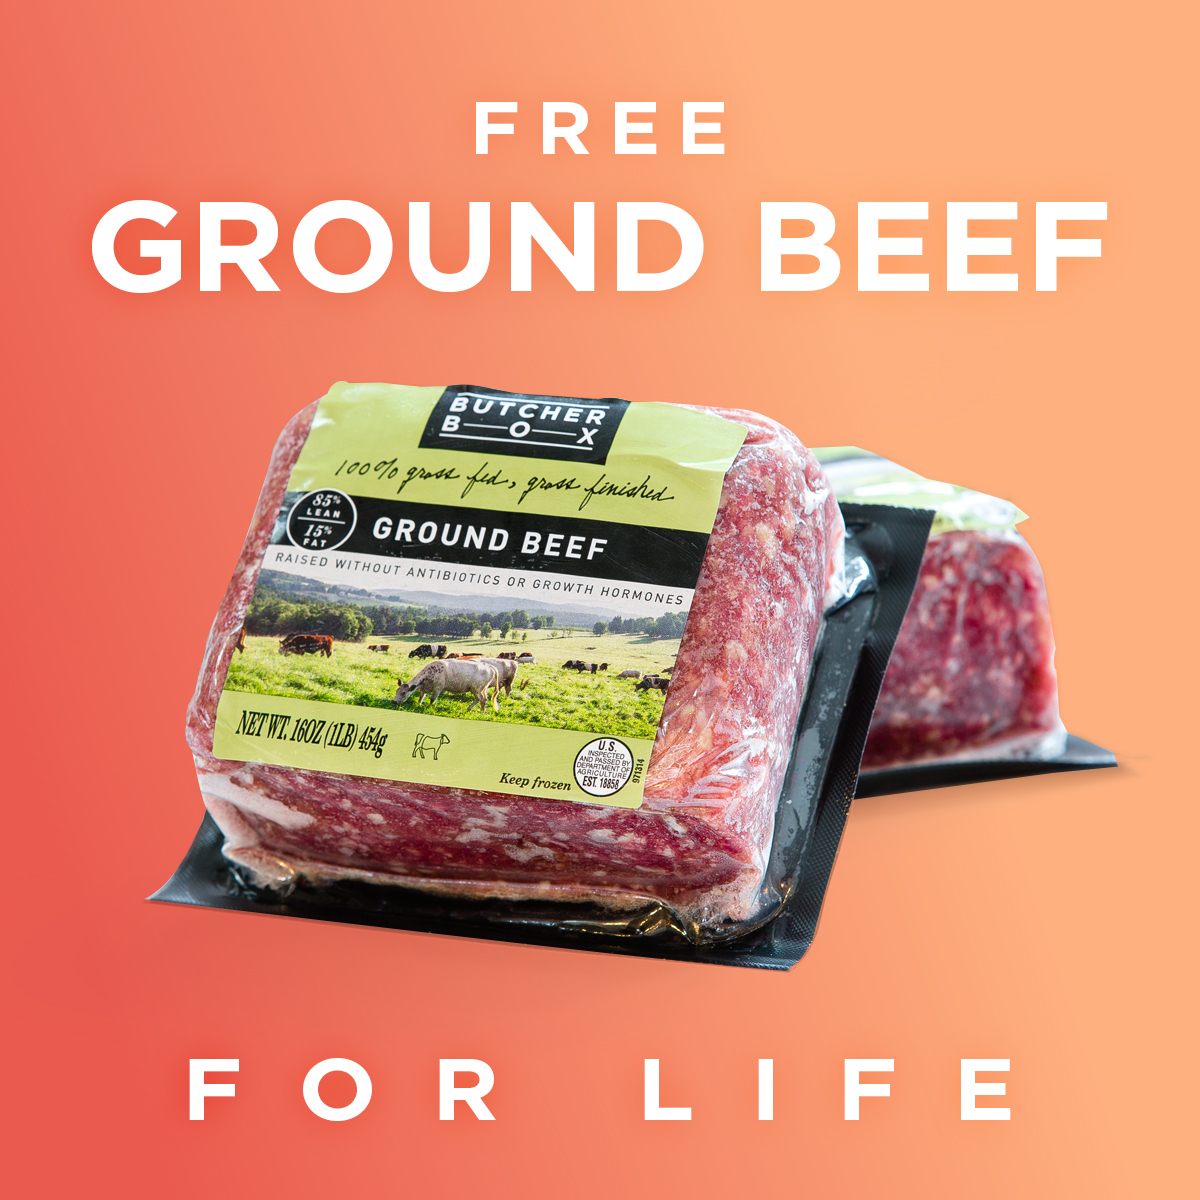 Butcher Box Coupon Free Ground Beef For Life! MSA